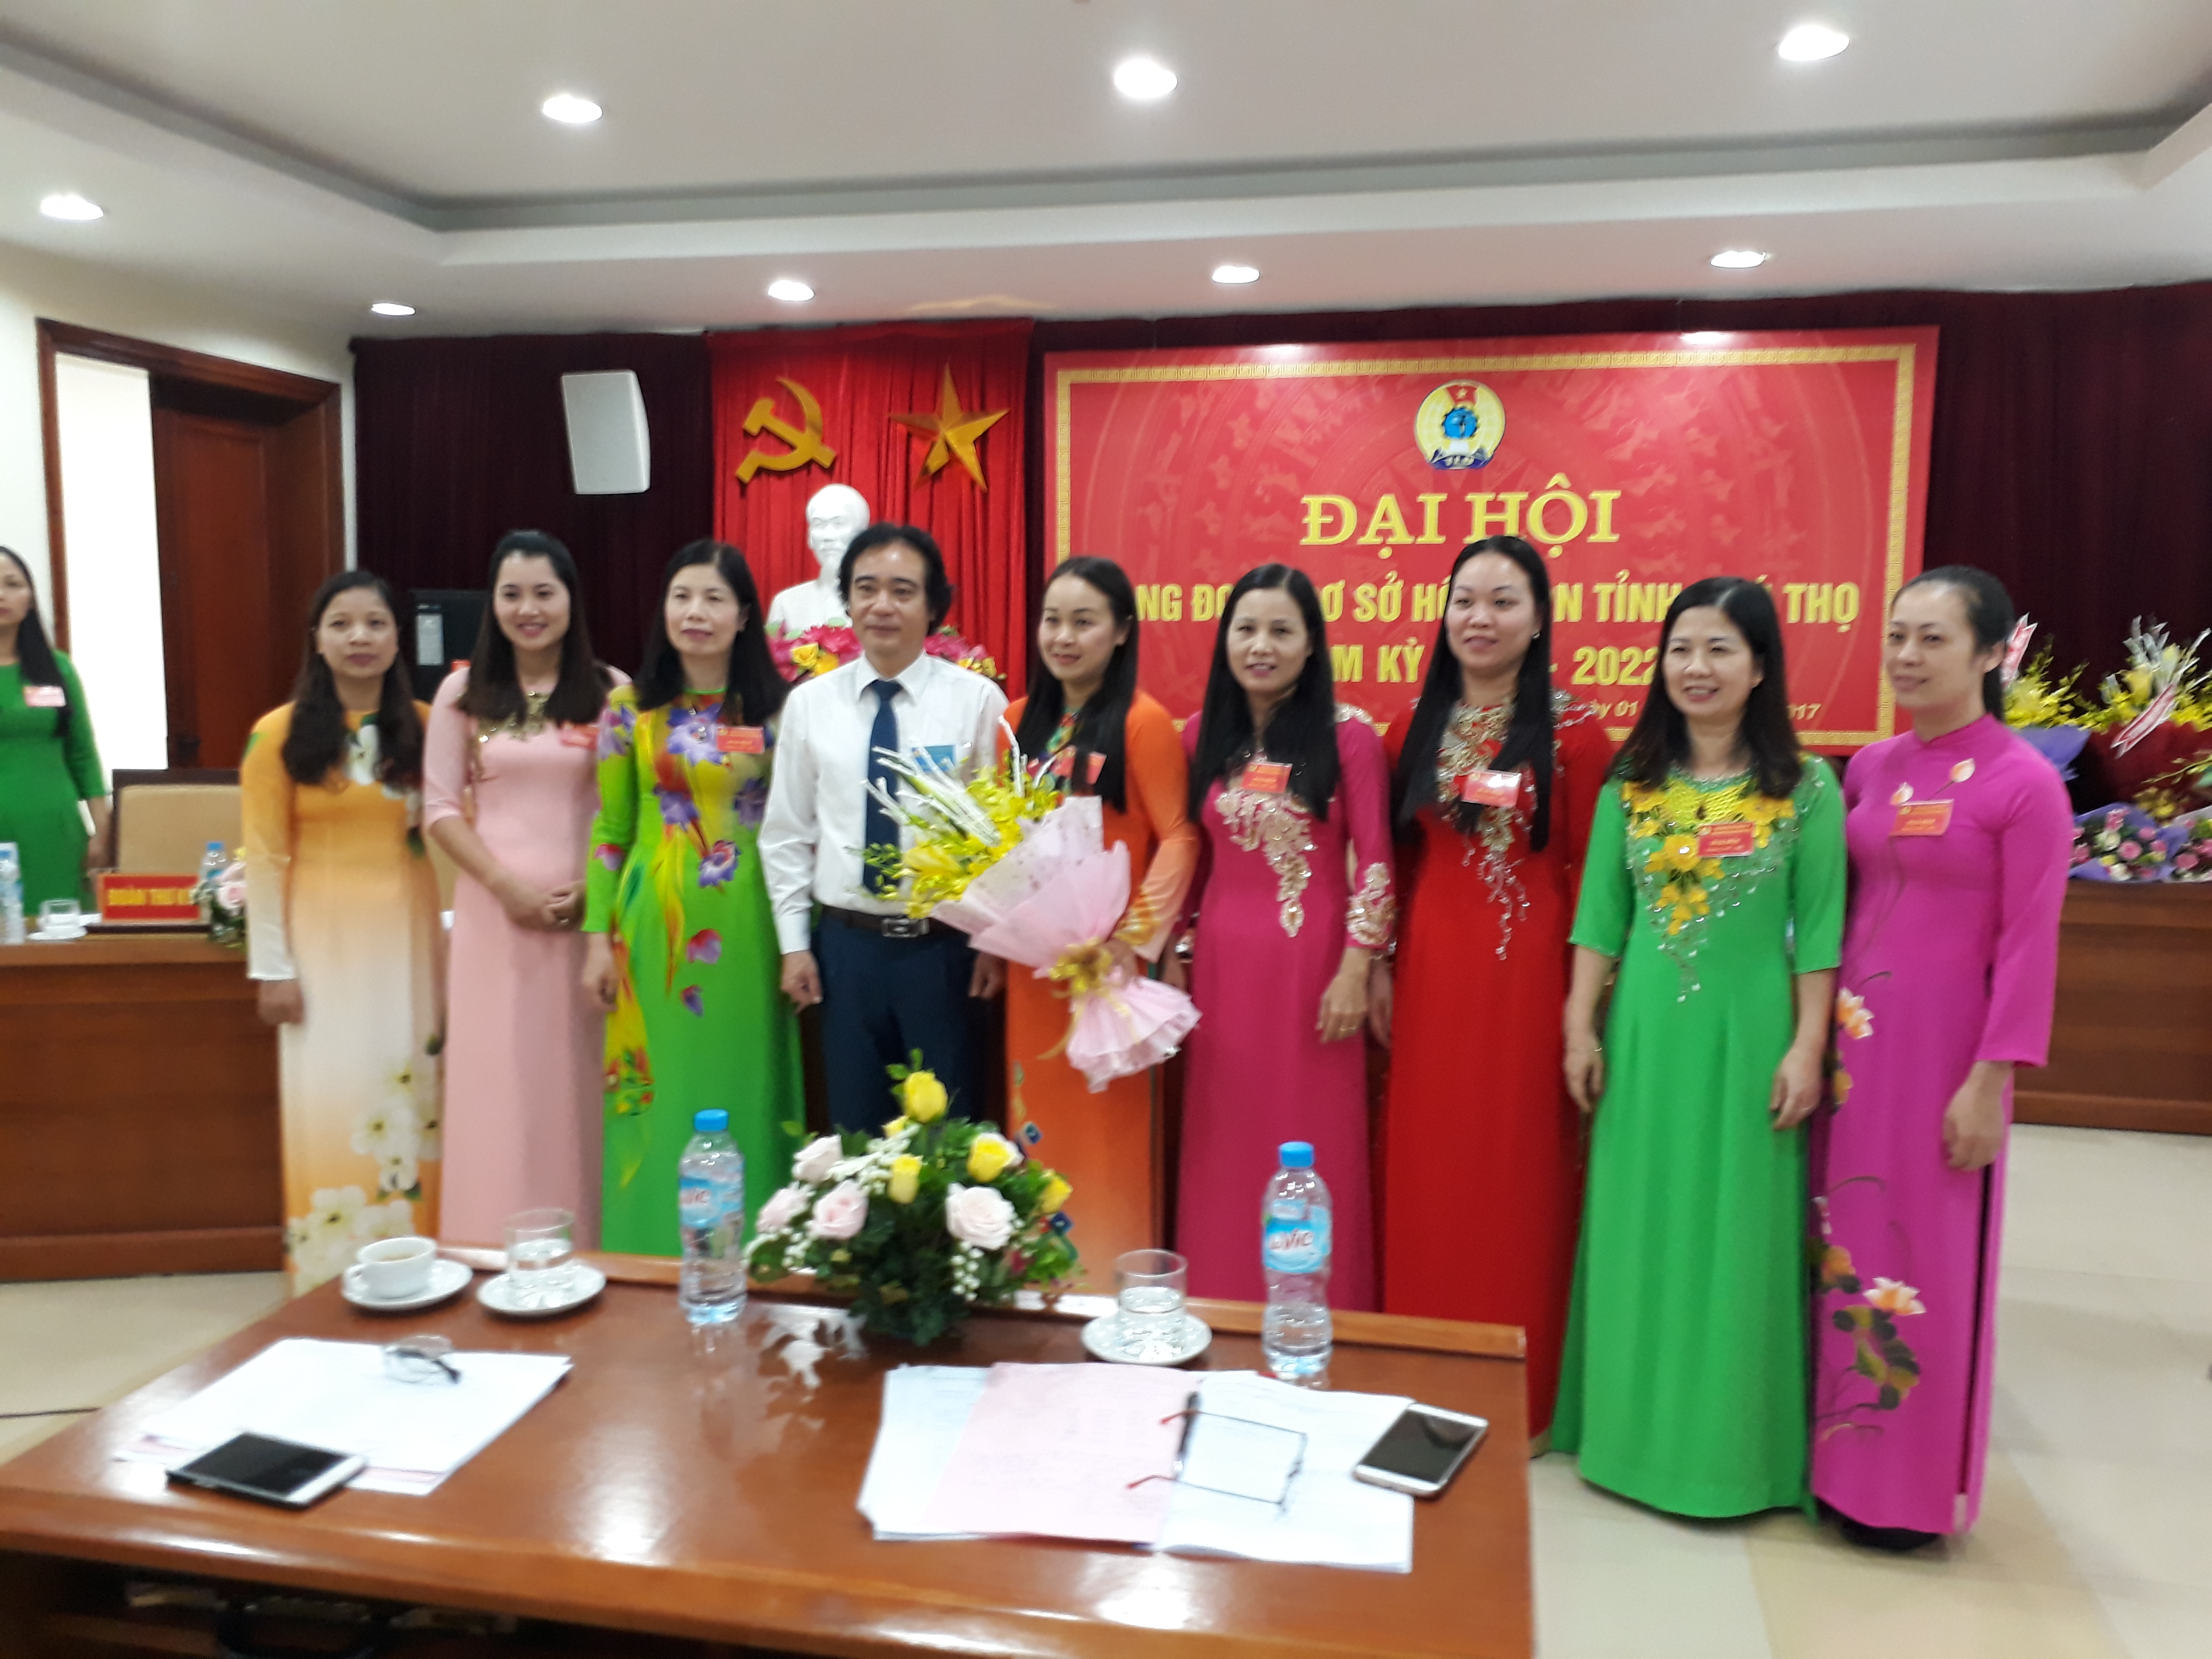 Đại hội công đoàn cơ sở Hội LHPN tỉnh Phú Thọ nhiệm kỳ 2017-2022